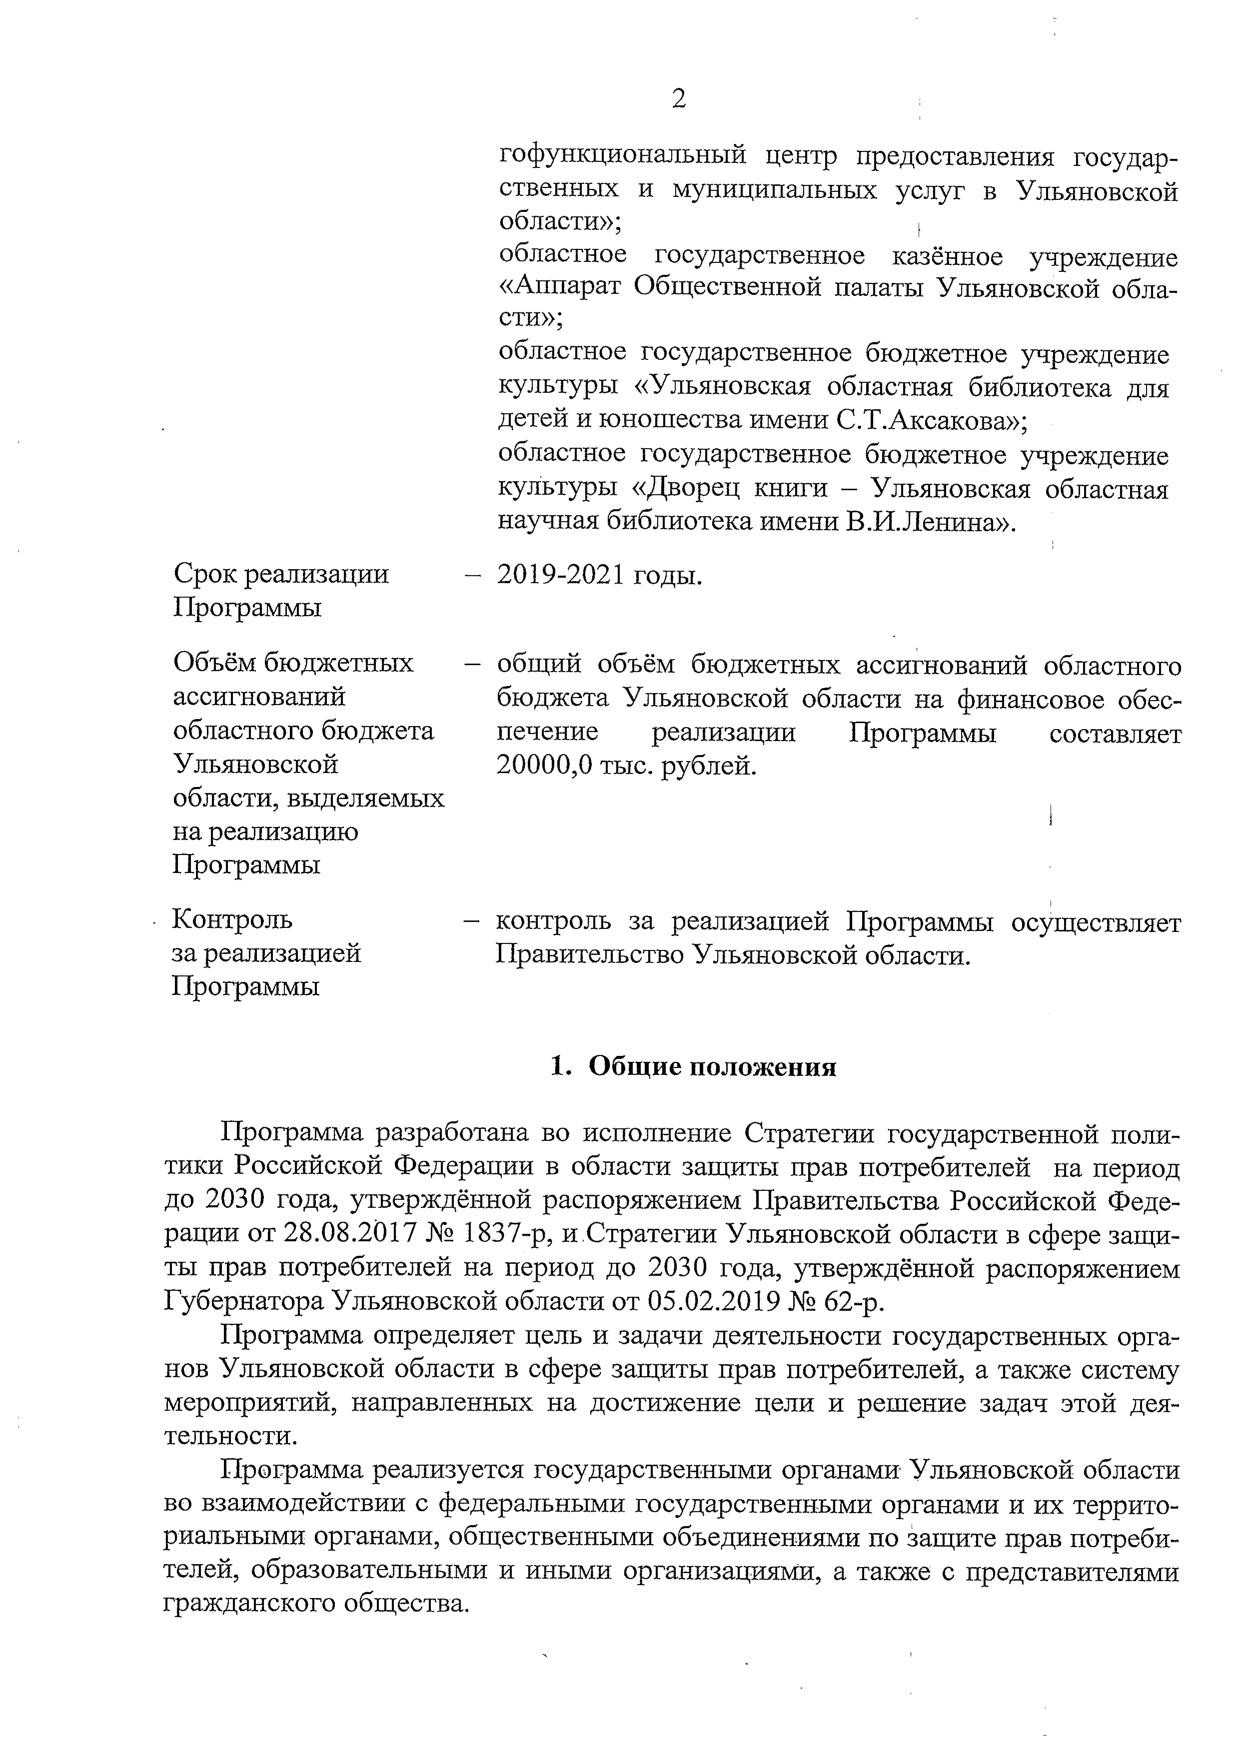 Программа Ульяновской области по обеспечению прав потребителей на 2019-2021 годы